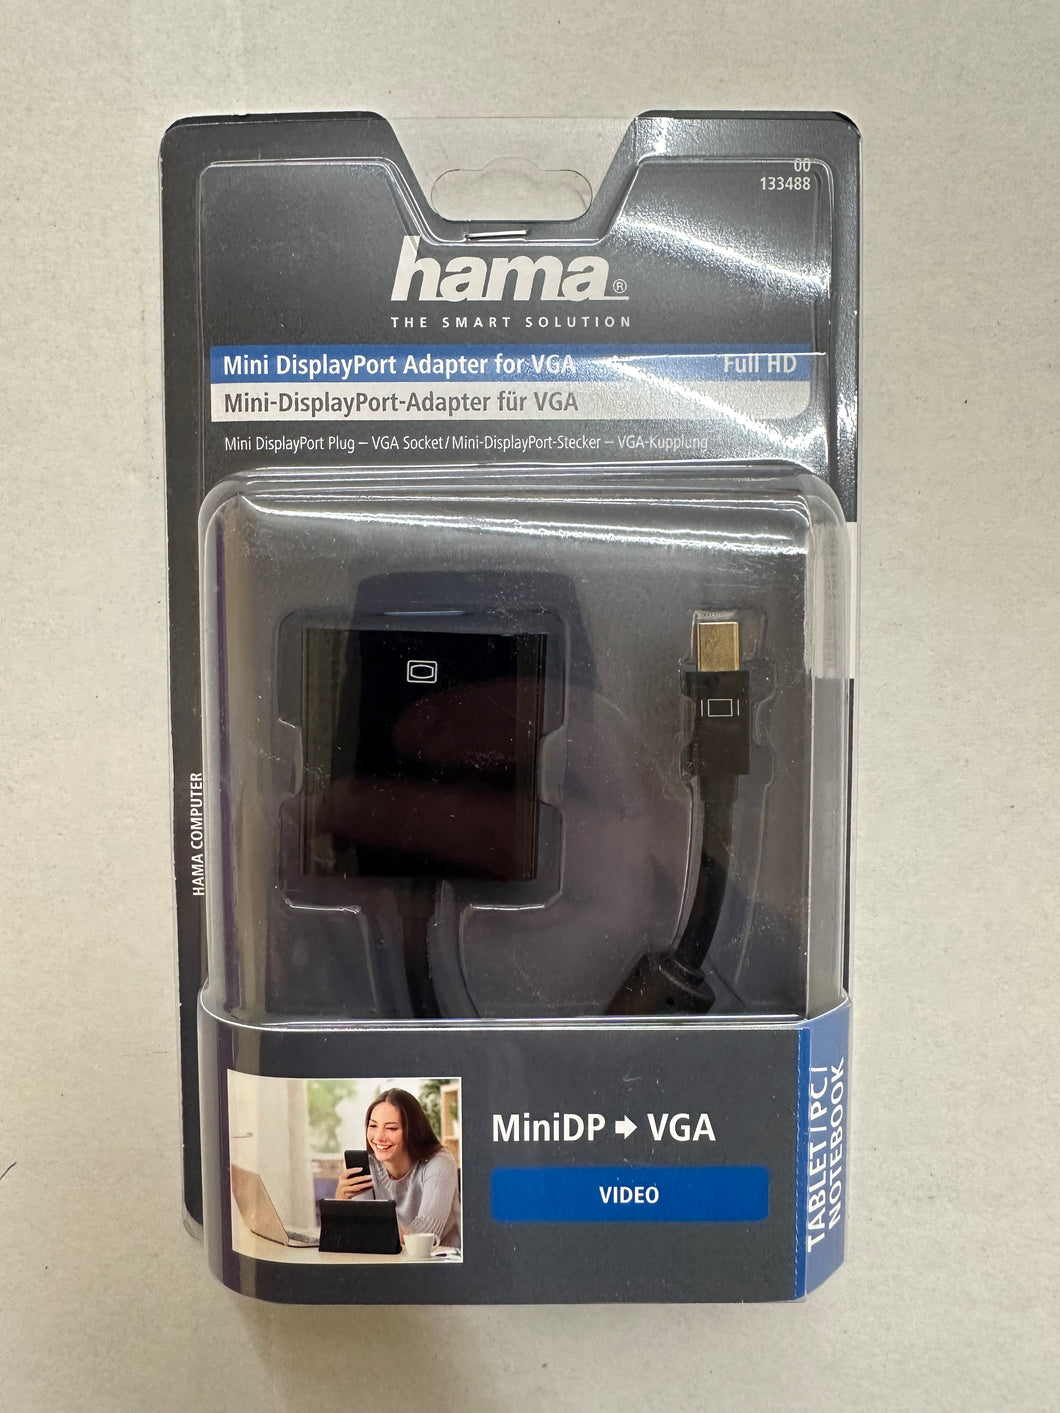 Hama 00133488 Mini-DisplayPort-Adapter für VGA Full-HD (Weiß)